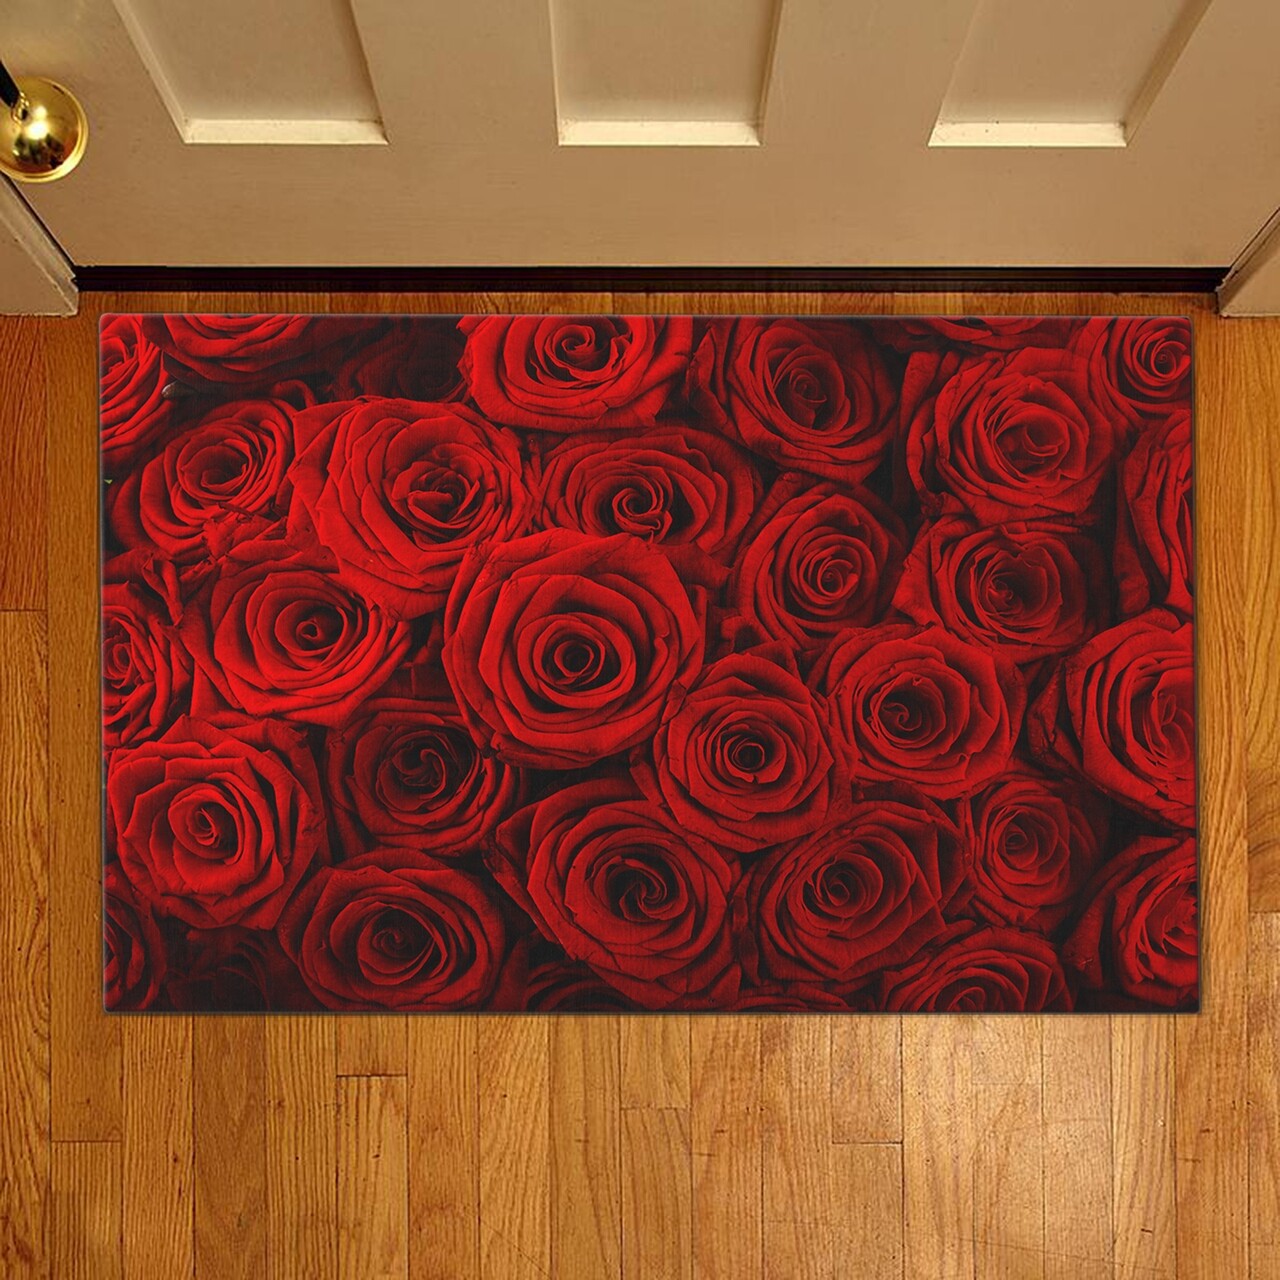 Bejárati szőnyeg Piros rózsák, Casberg, 38x58 cm, poliészter, piros